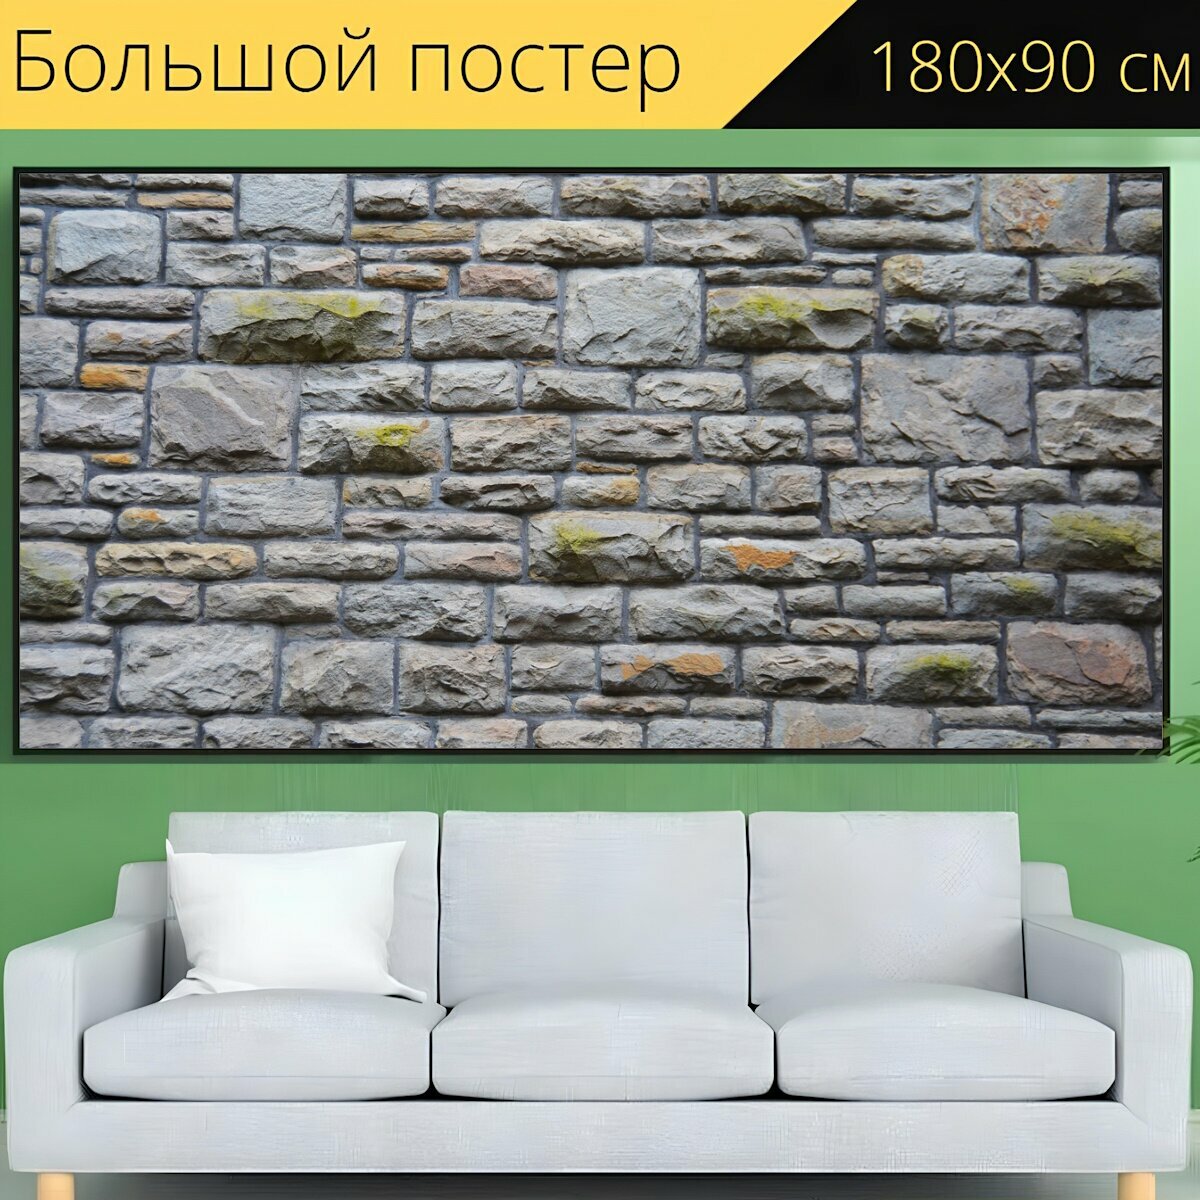 Большой постер "Каменная стена, валлийская стена, камень" 180 x 90 см. для интерьера